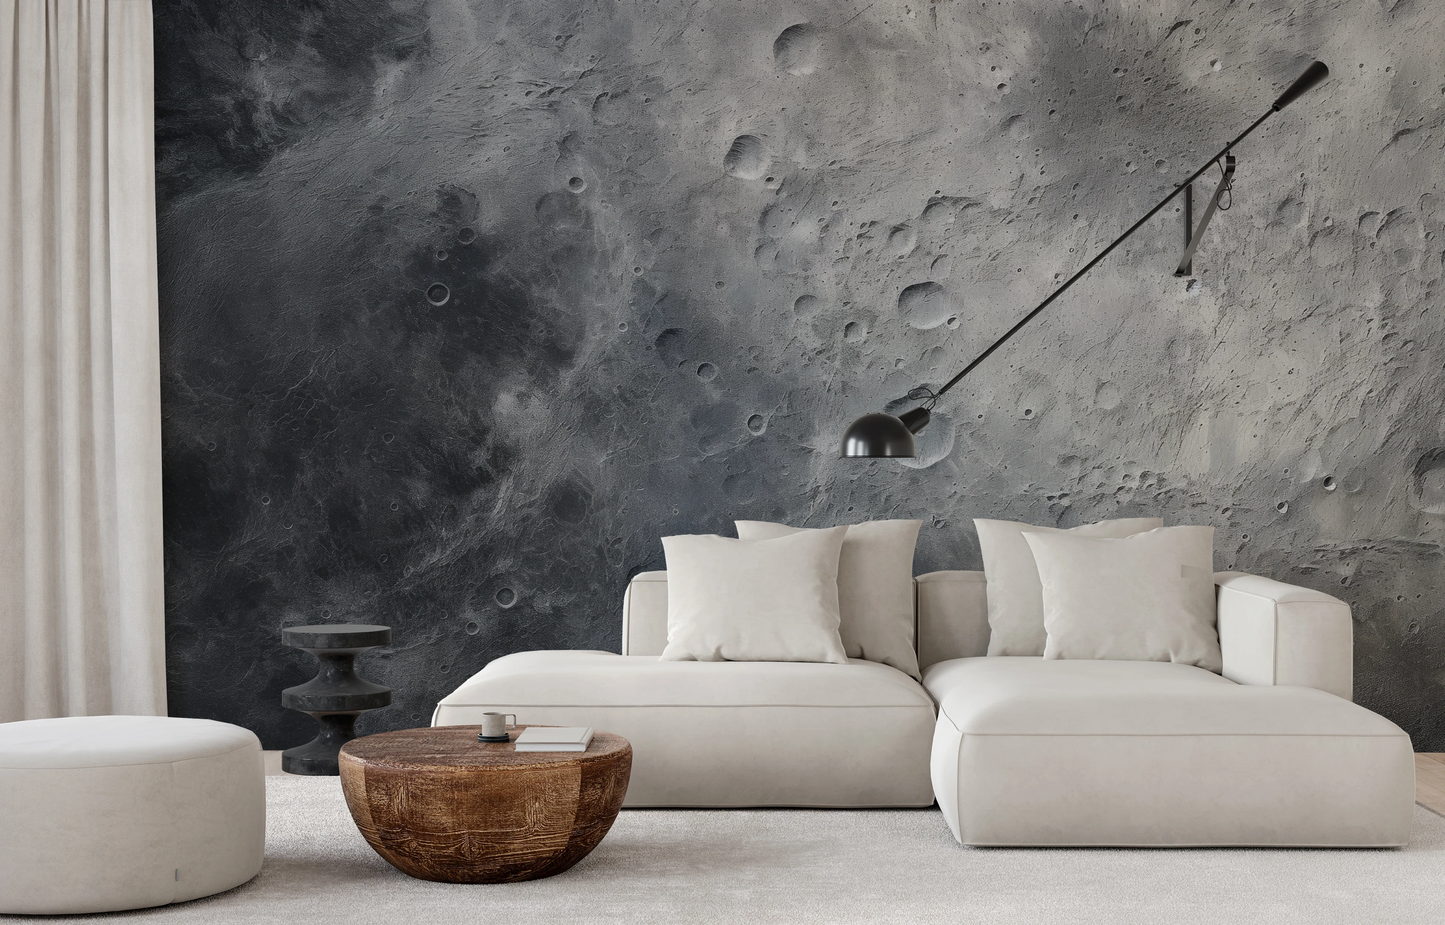 Fototapeta artystyczna o nazwie Moon's Monochrome #2 pokazana w aranżacji wnętrza.